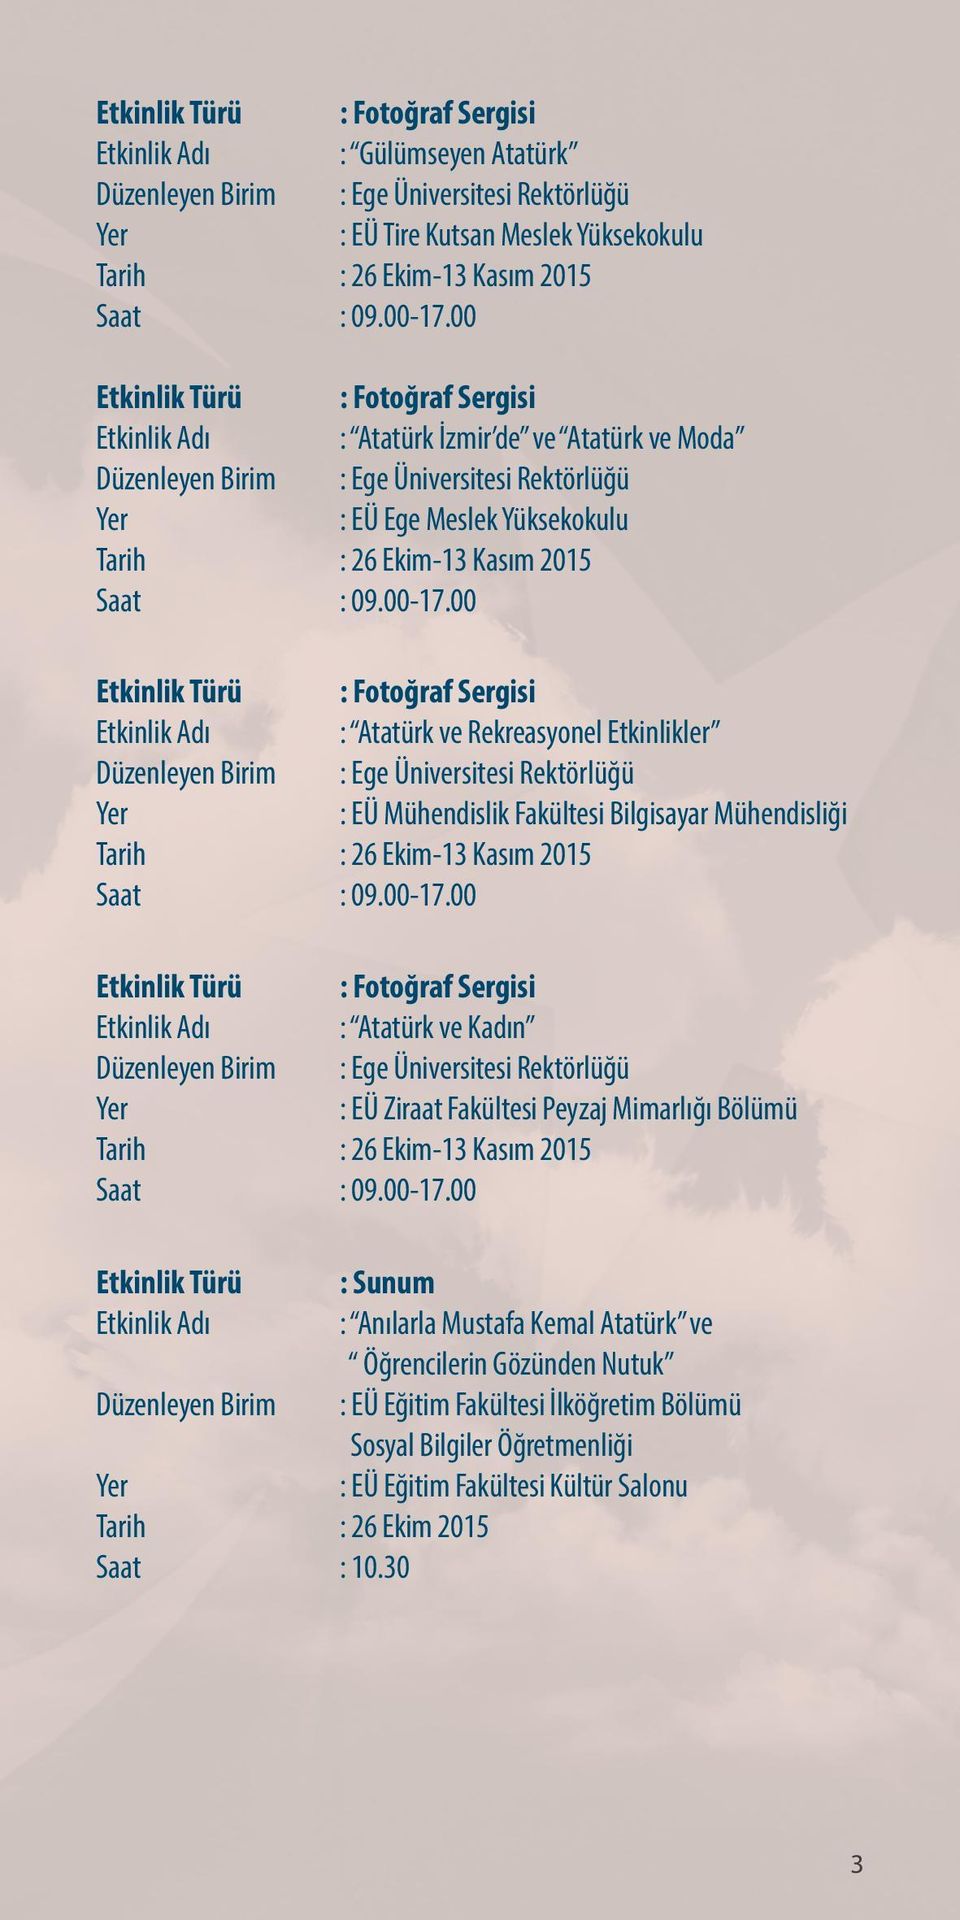 00 : Fotoğraf Sergisi : Atatürk ve Rekreasyonel Etkinlikler : EÜ Mühendislik Fakültesi Bilgisayar Mühendisliği Tarih : 26 Ekim-13 Kasım 2015 Saat : 09.00-17.